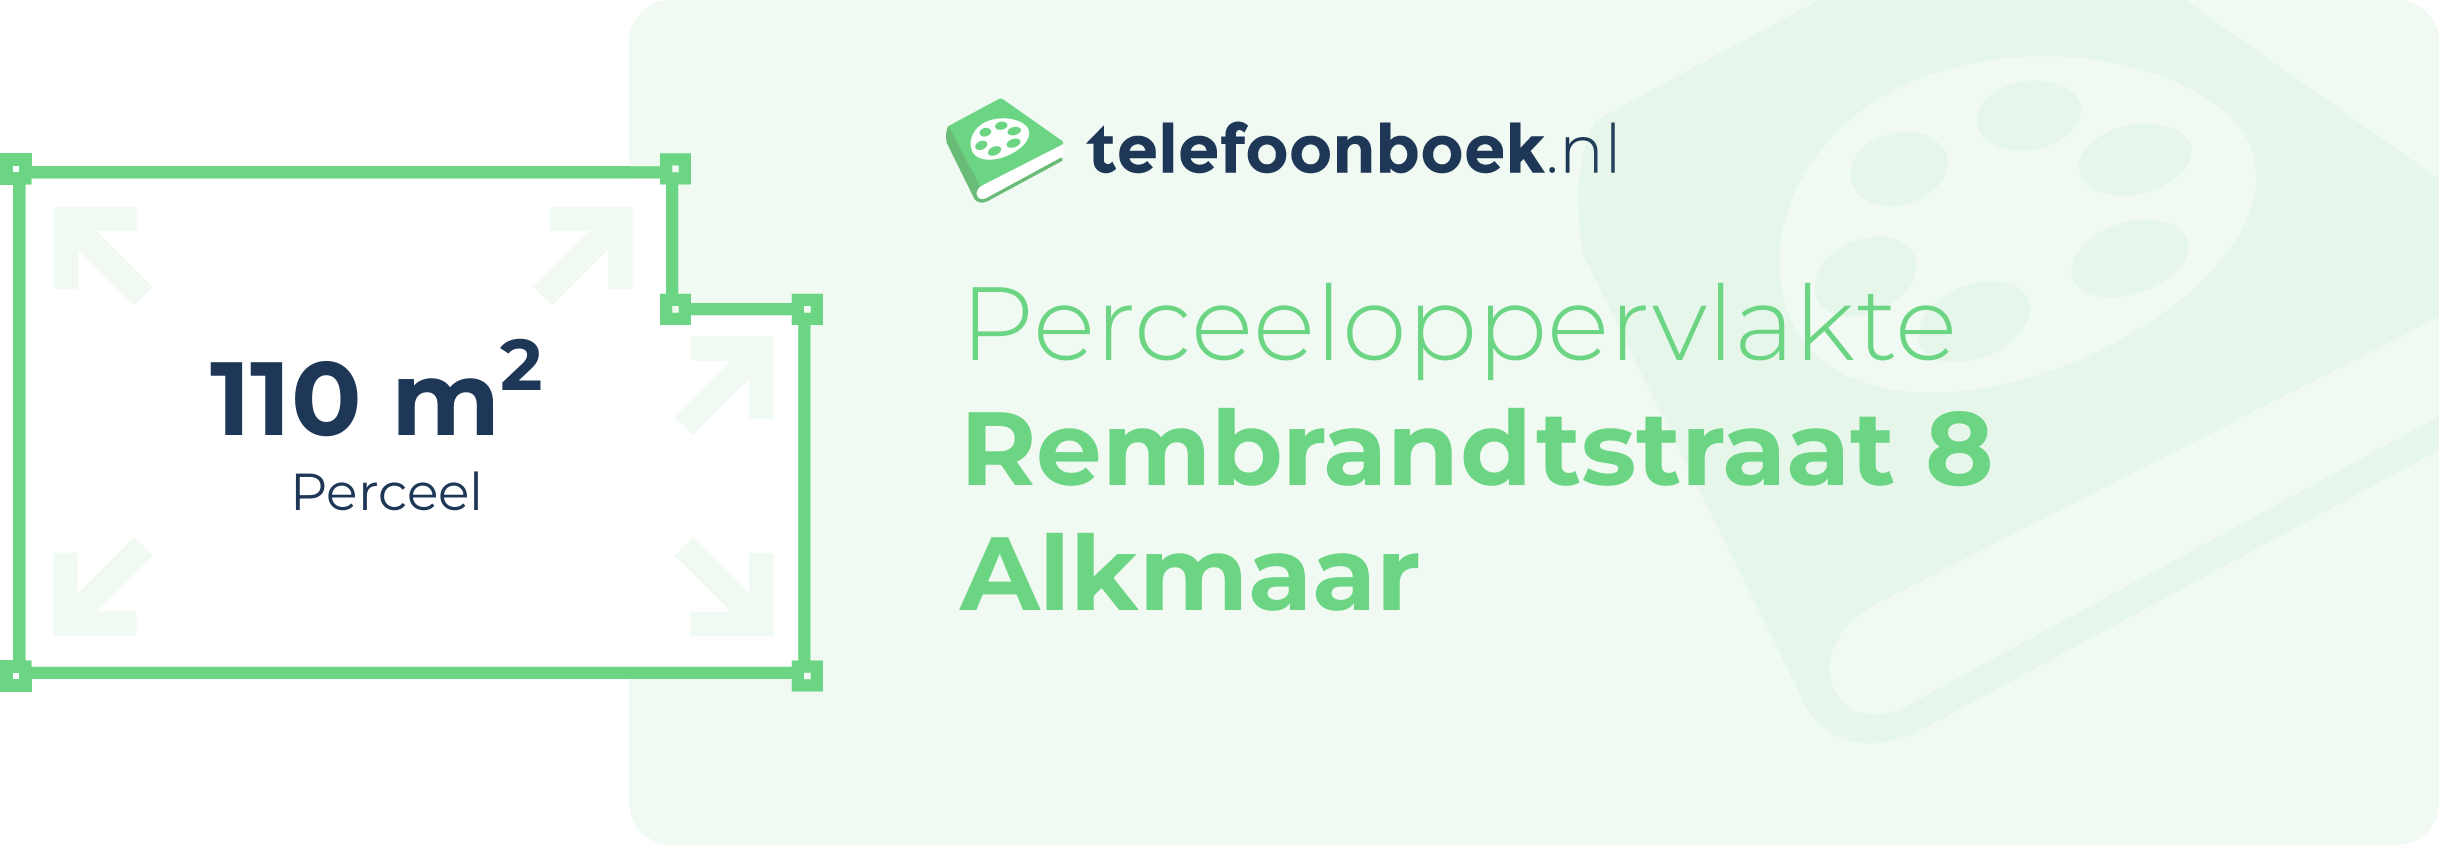 Perceeloppervlakte Rembrandtstraat 8 Alkmaar